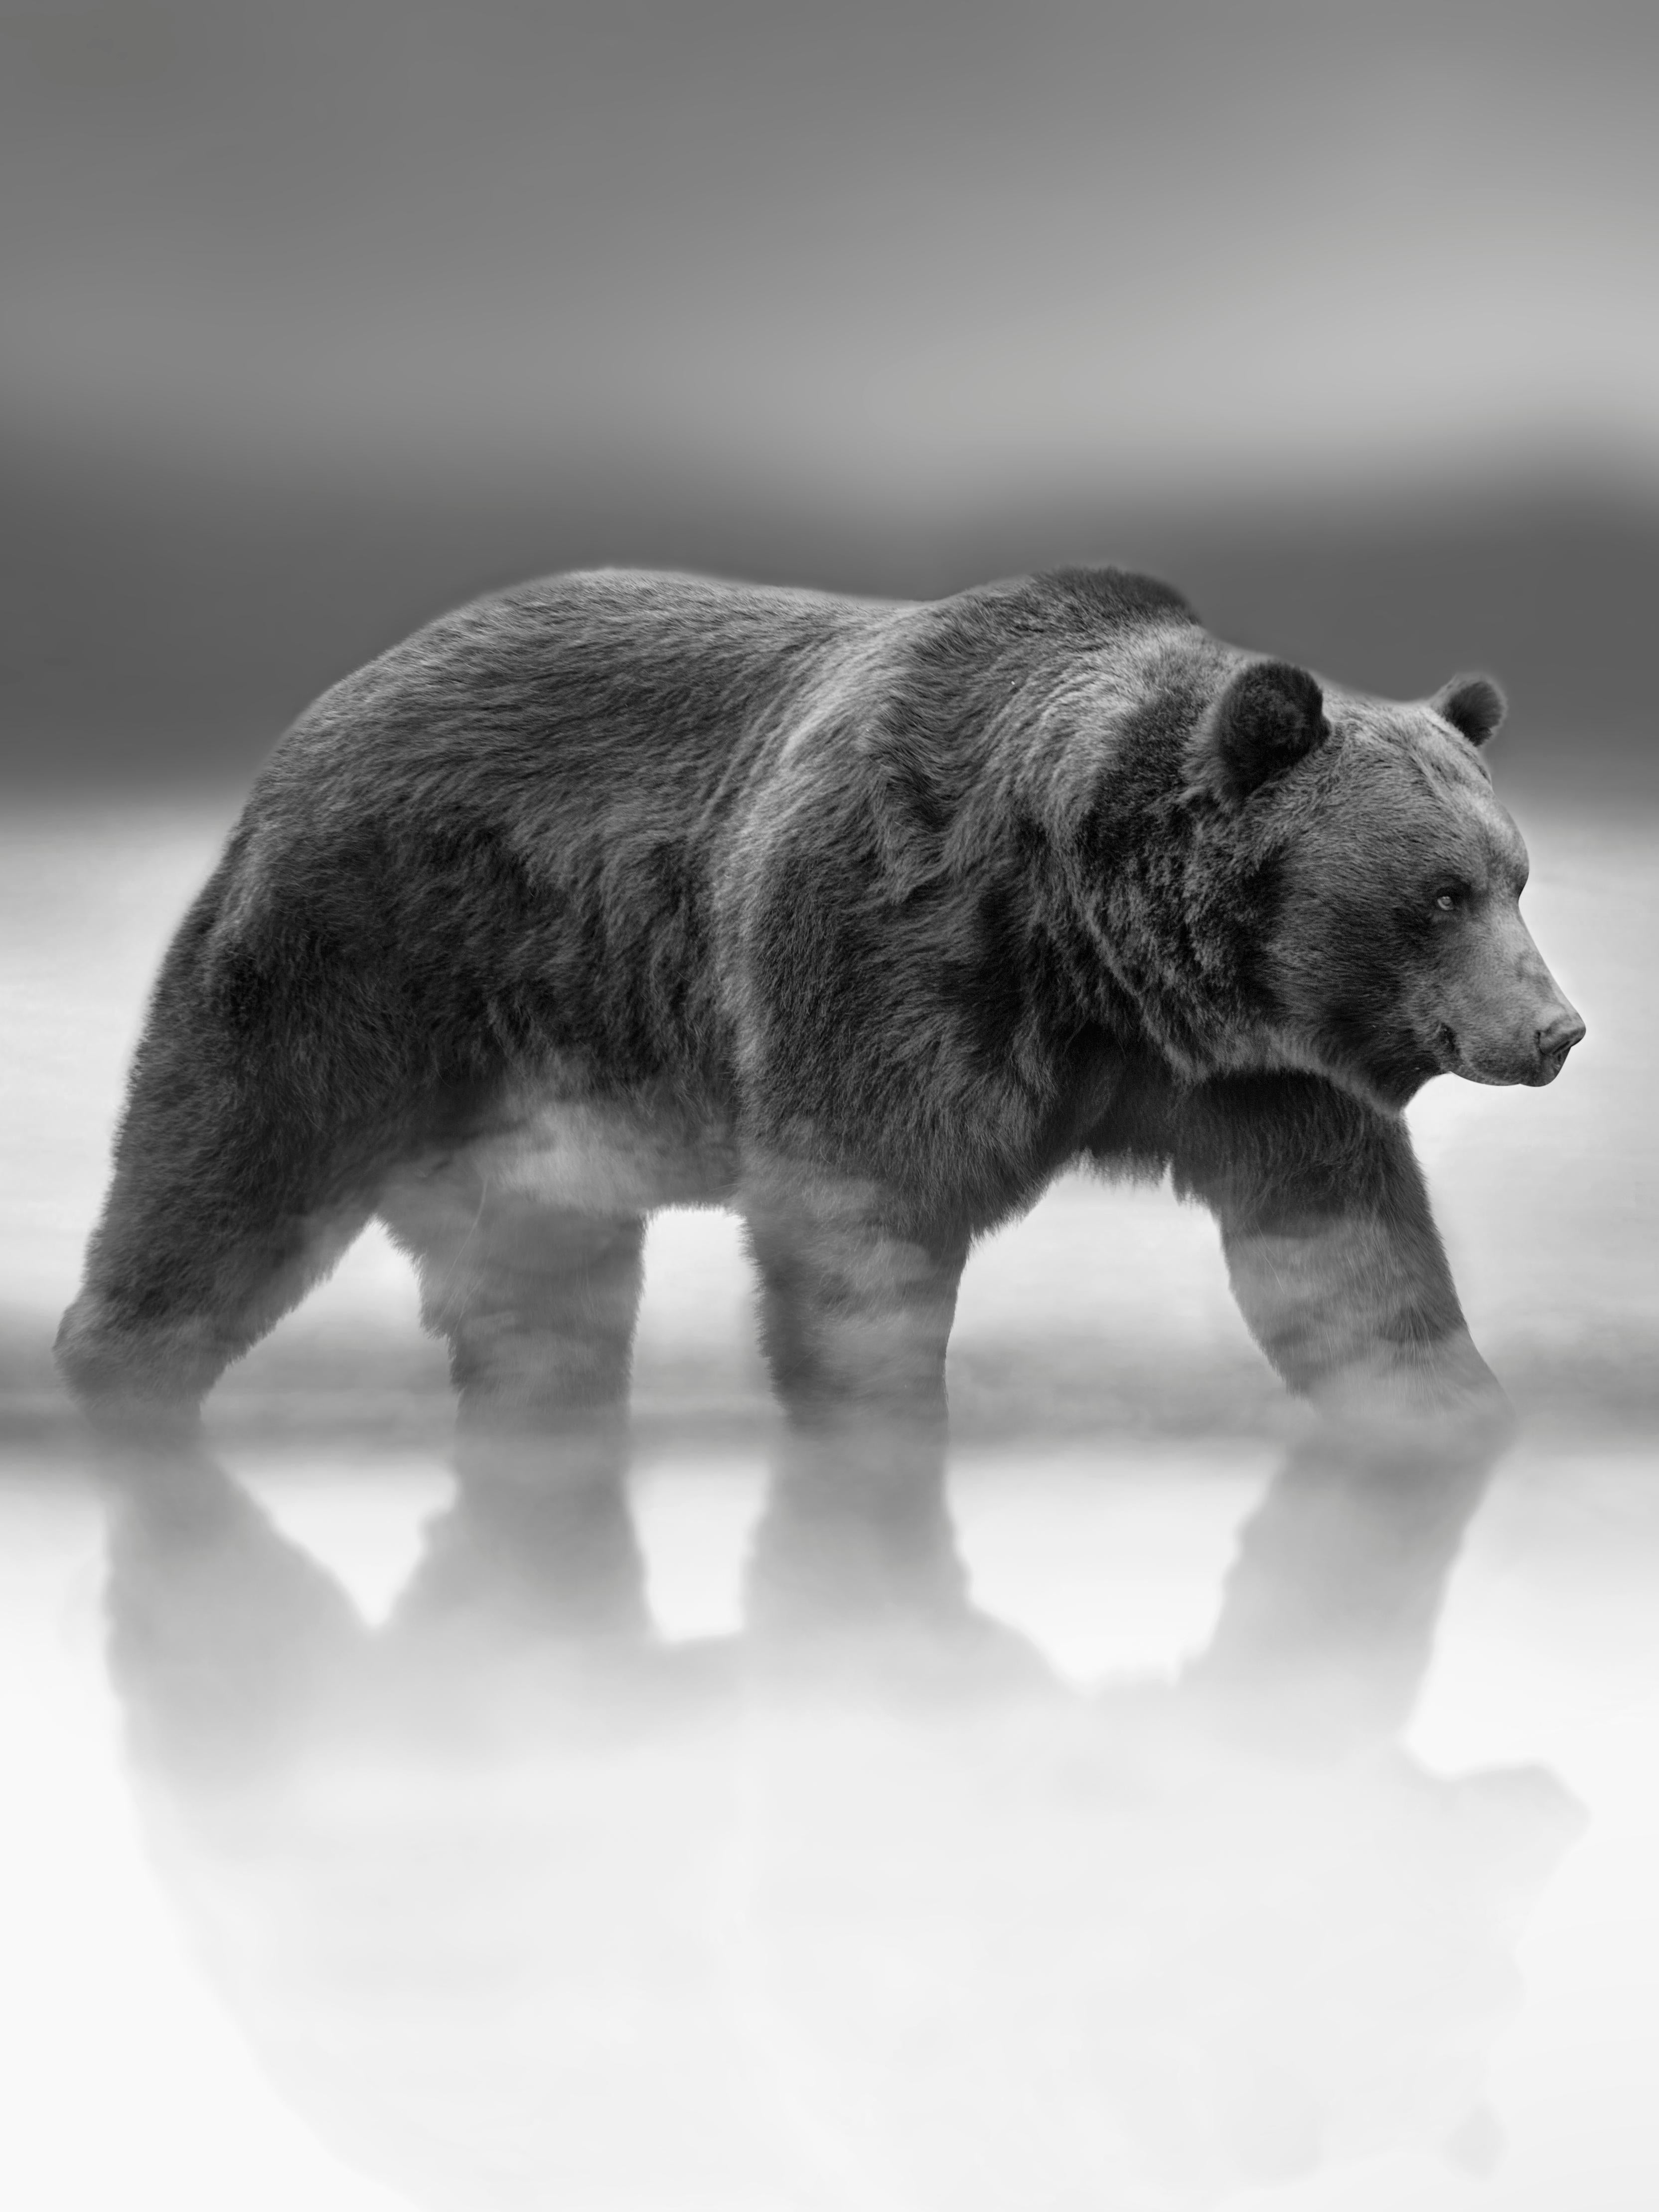 Animal Print Shane Russeck -  "Reflets" Photographie d'ours noir et blanc, 36x48 Photographie, Kodiak, Grizzly